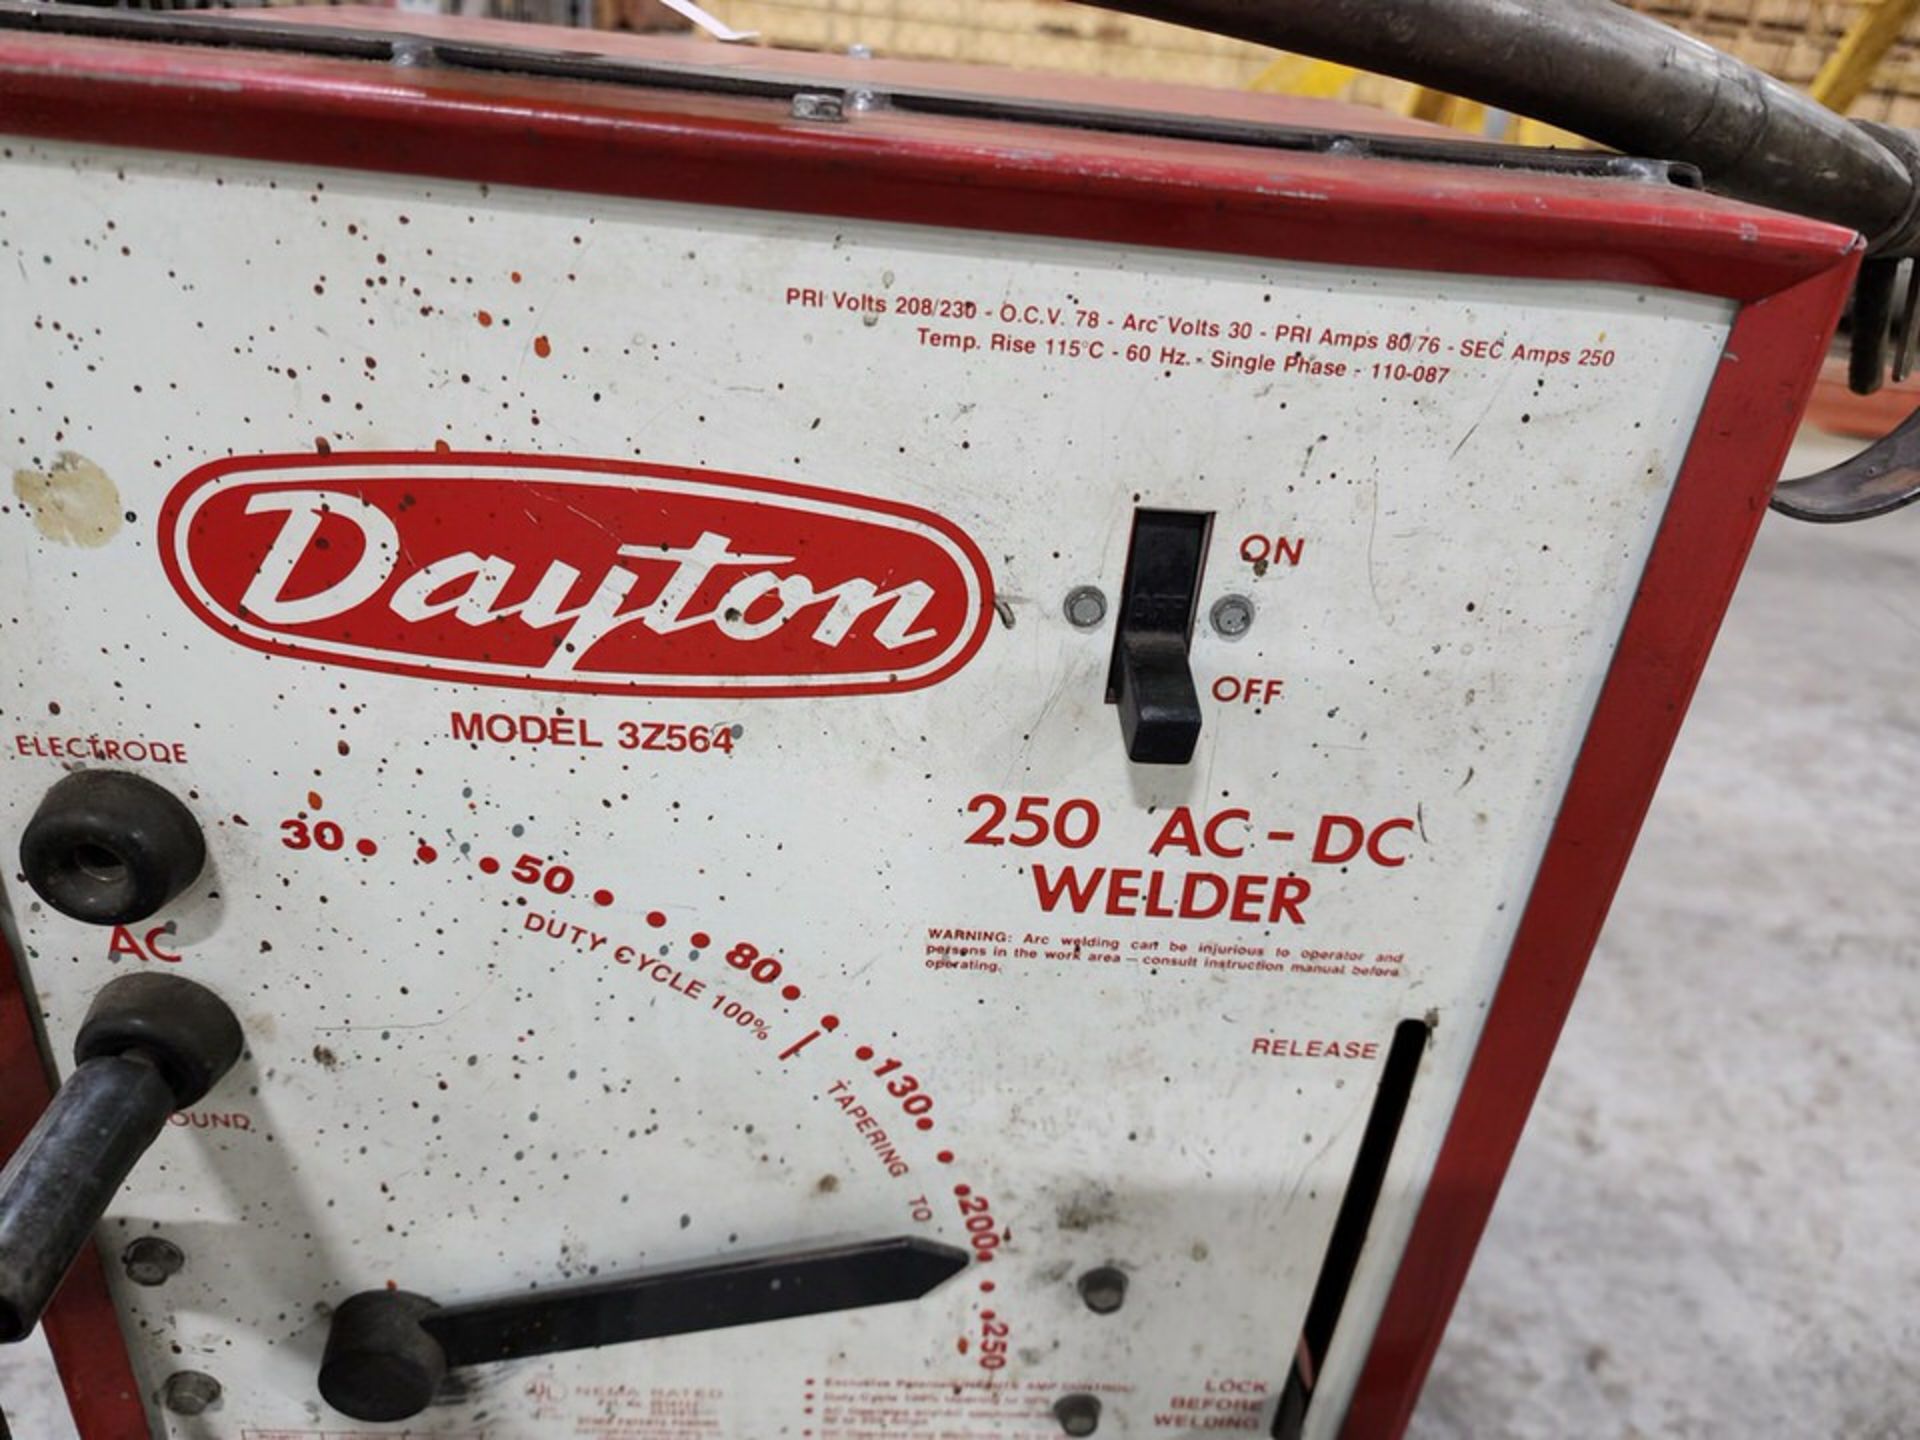 Dayton 3Z564 250 AC-DC Welder 208/230V, 30 Arc Volts, 60HZ, 1PH, PRI Amps: 80/76 - Image 4 of 4